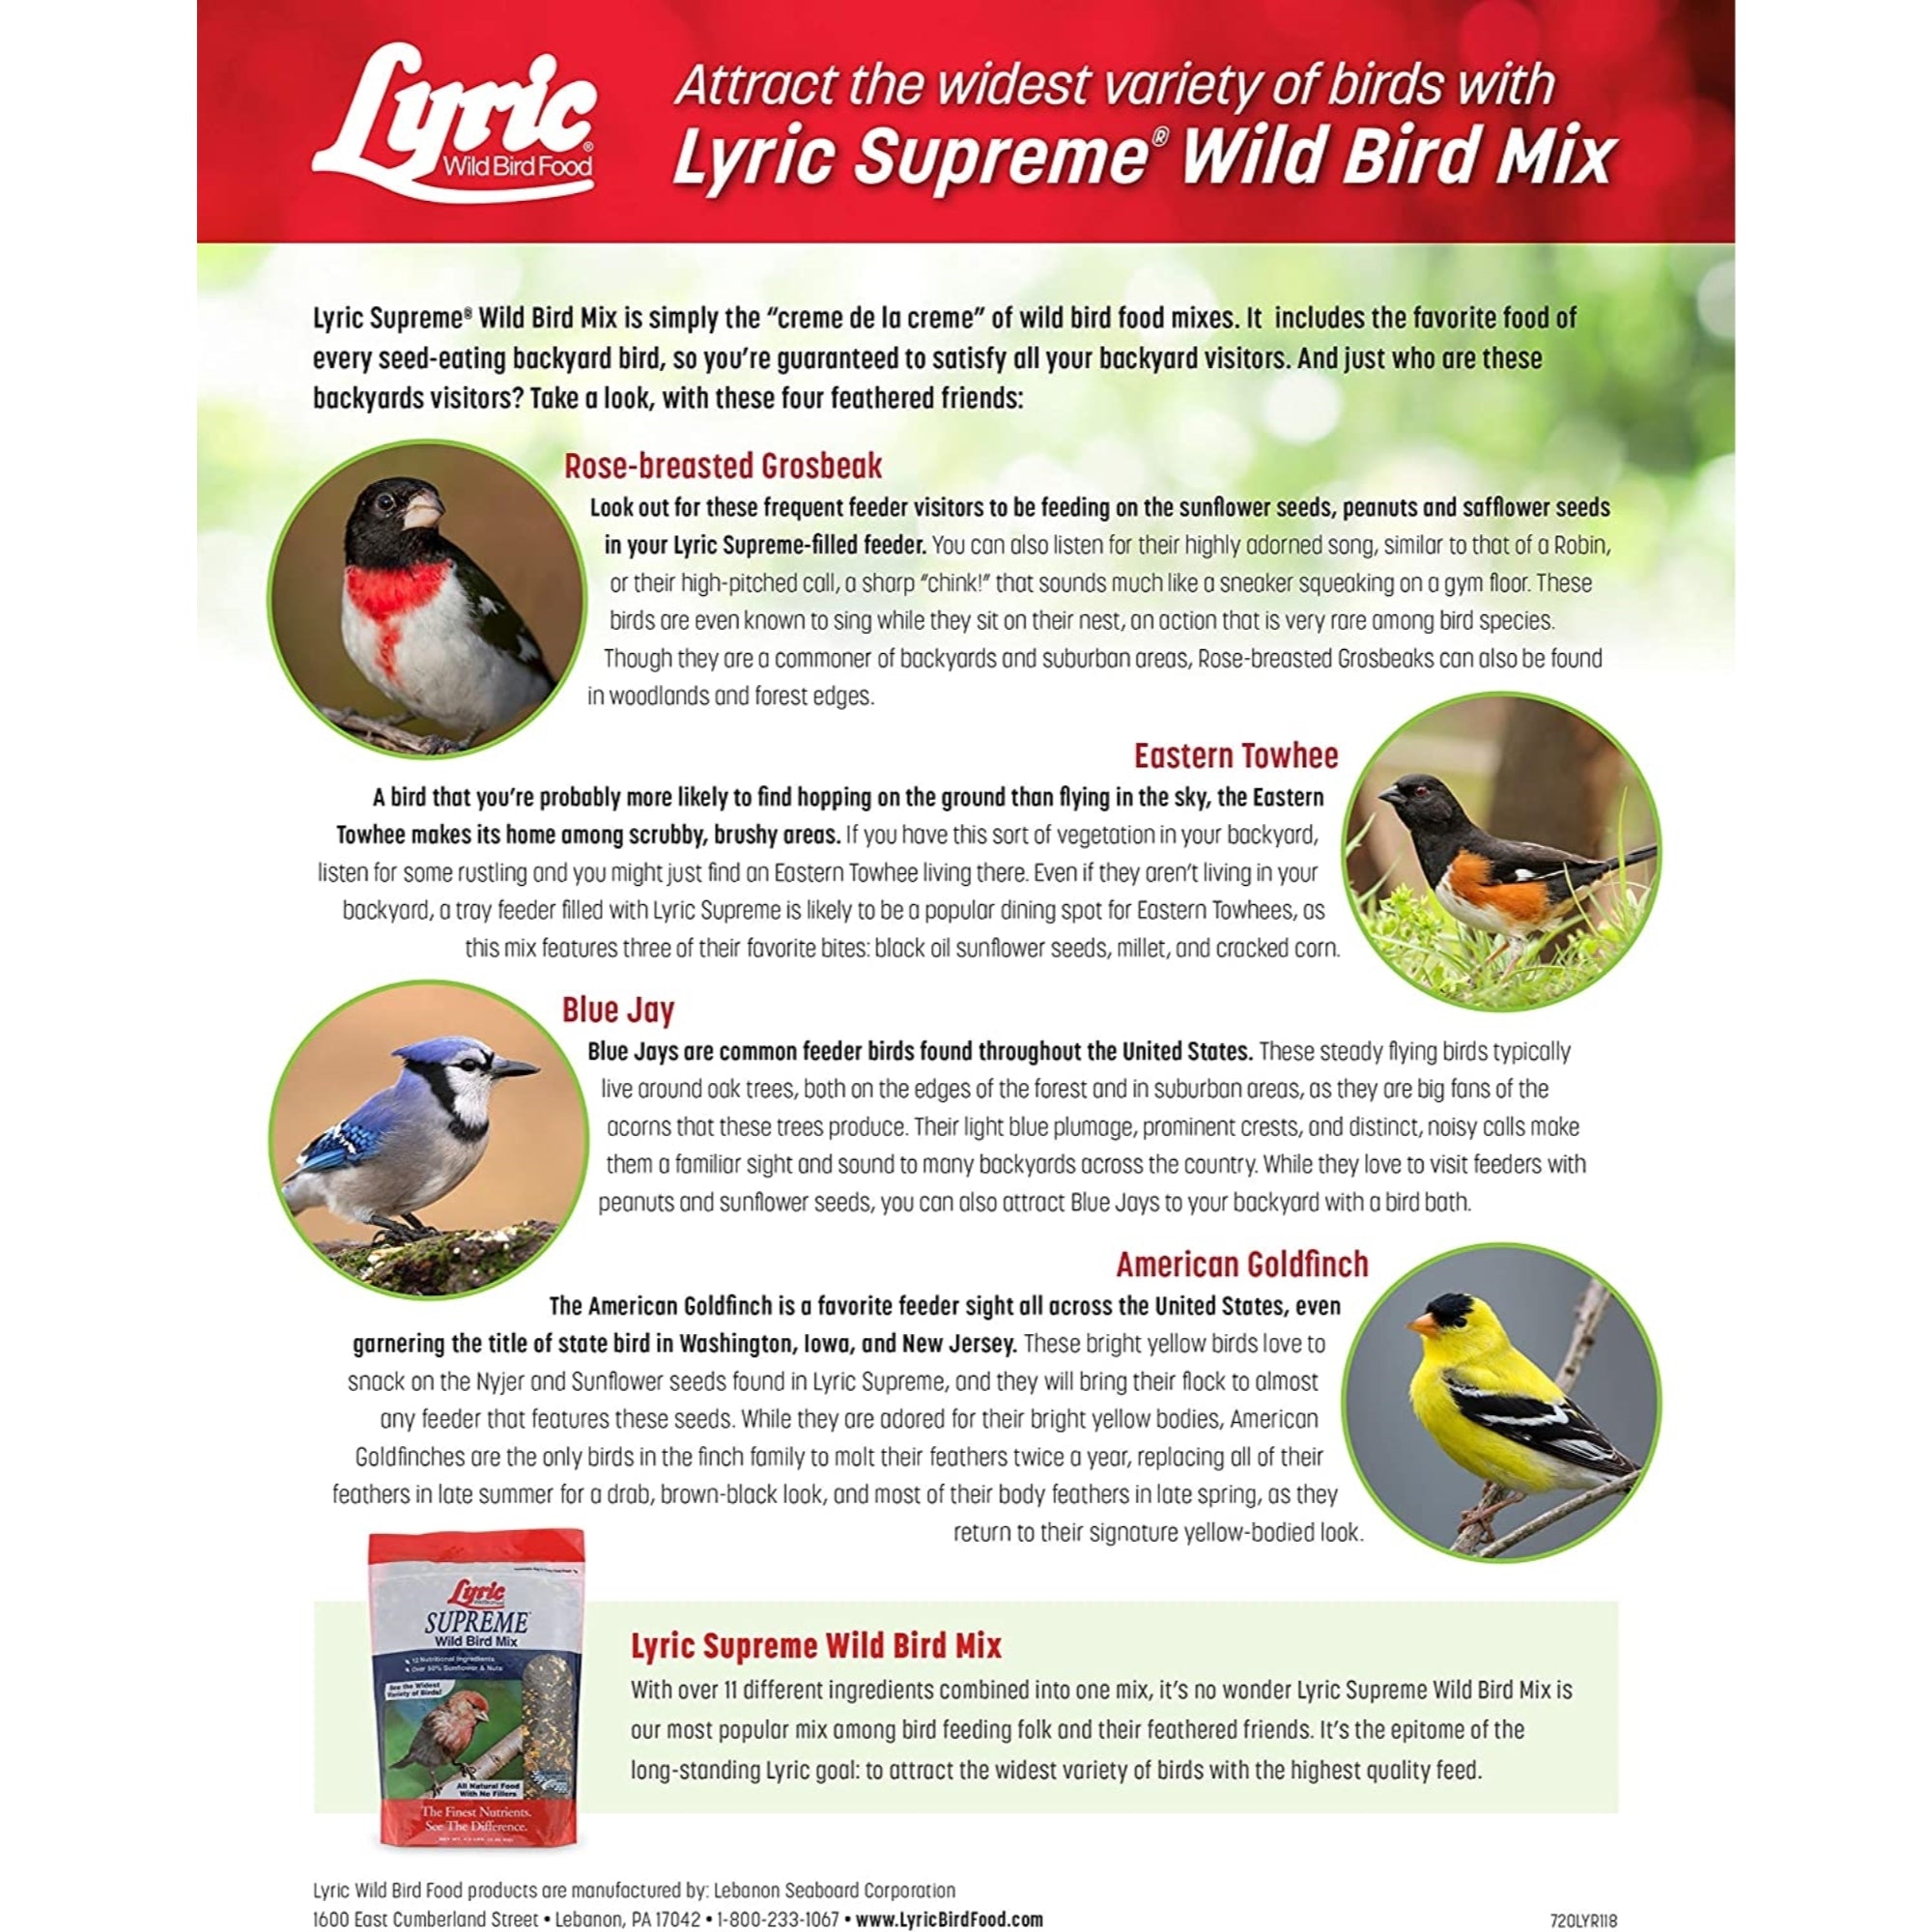 Lyric Supreme Wild Bird Mix